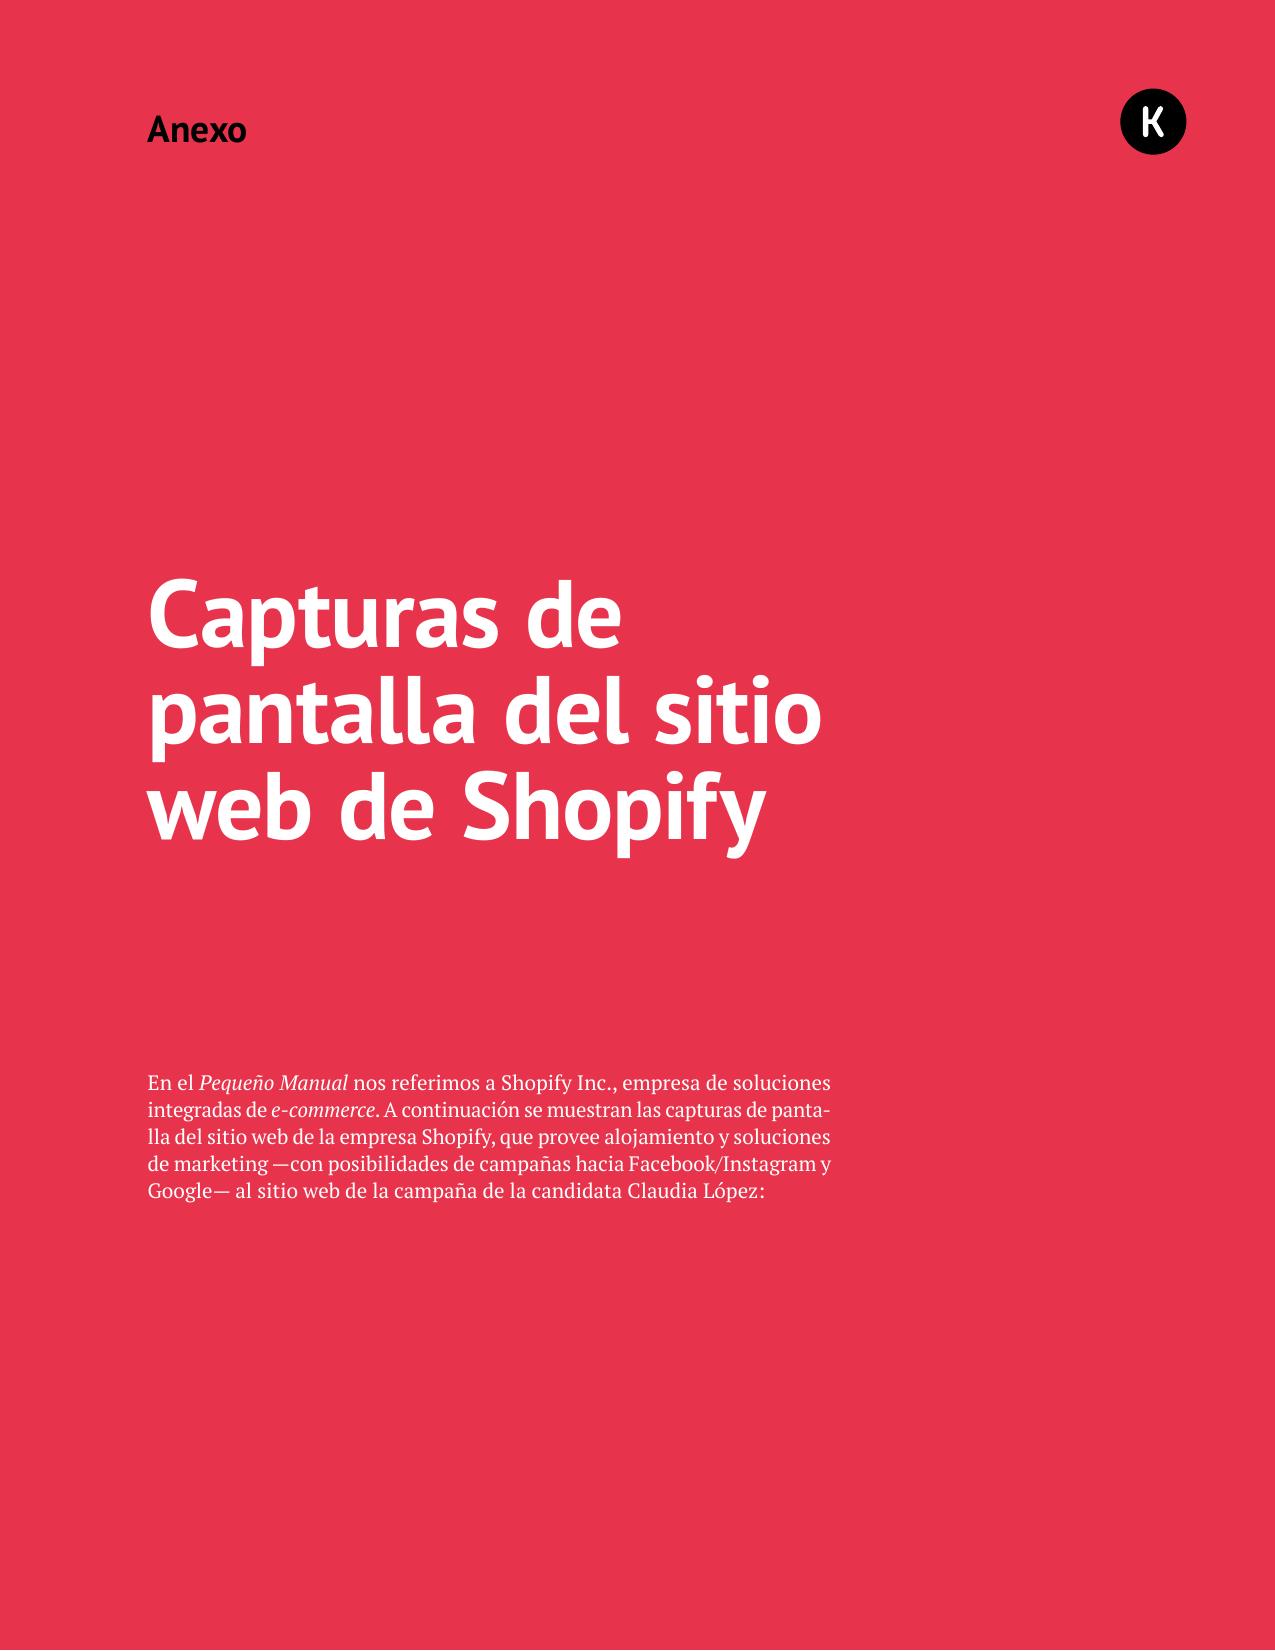 Anexo 03 - Capturas de pantalla del sitio web de Shopify